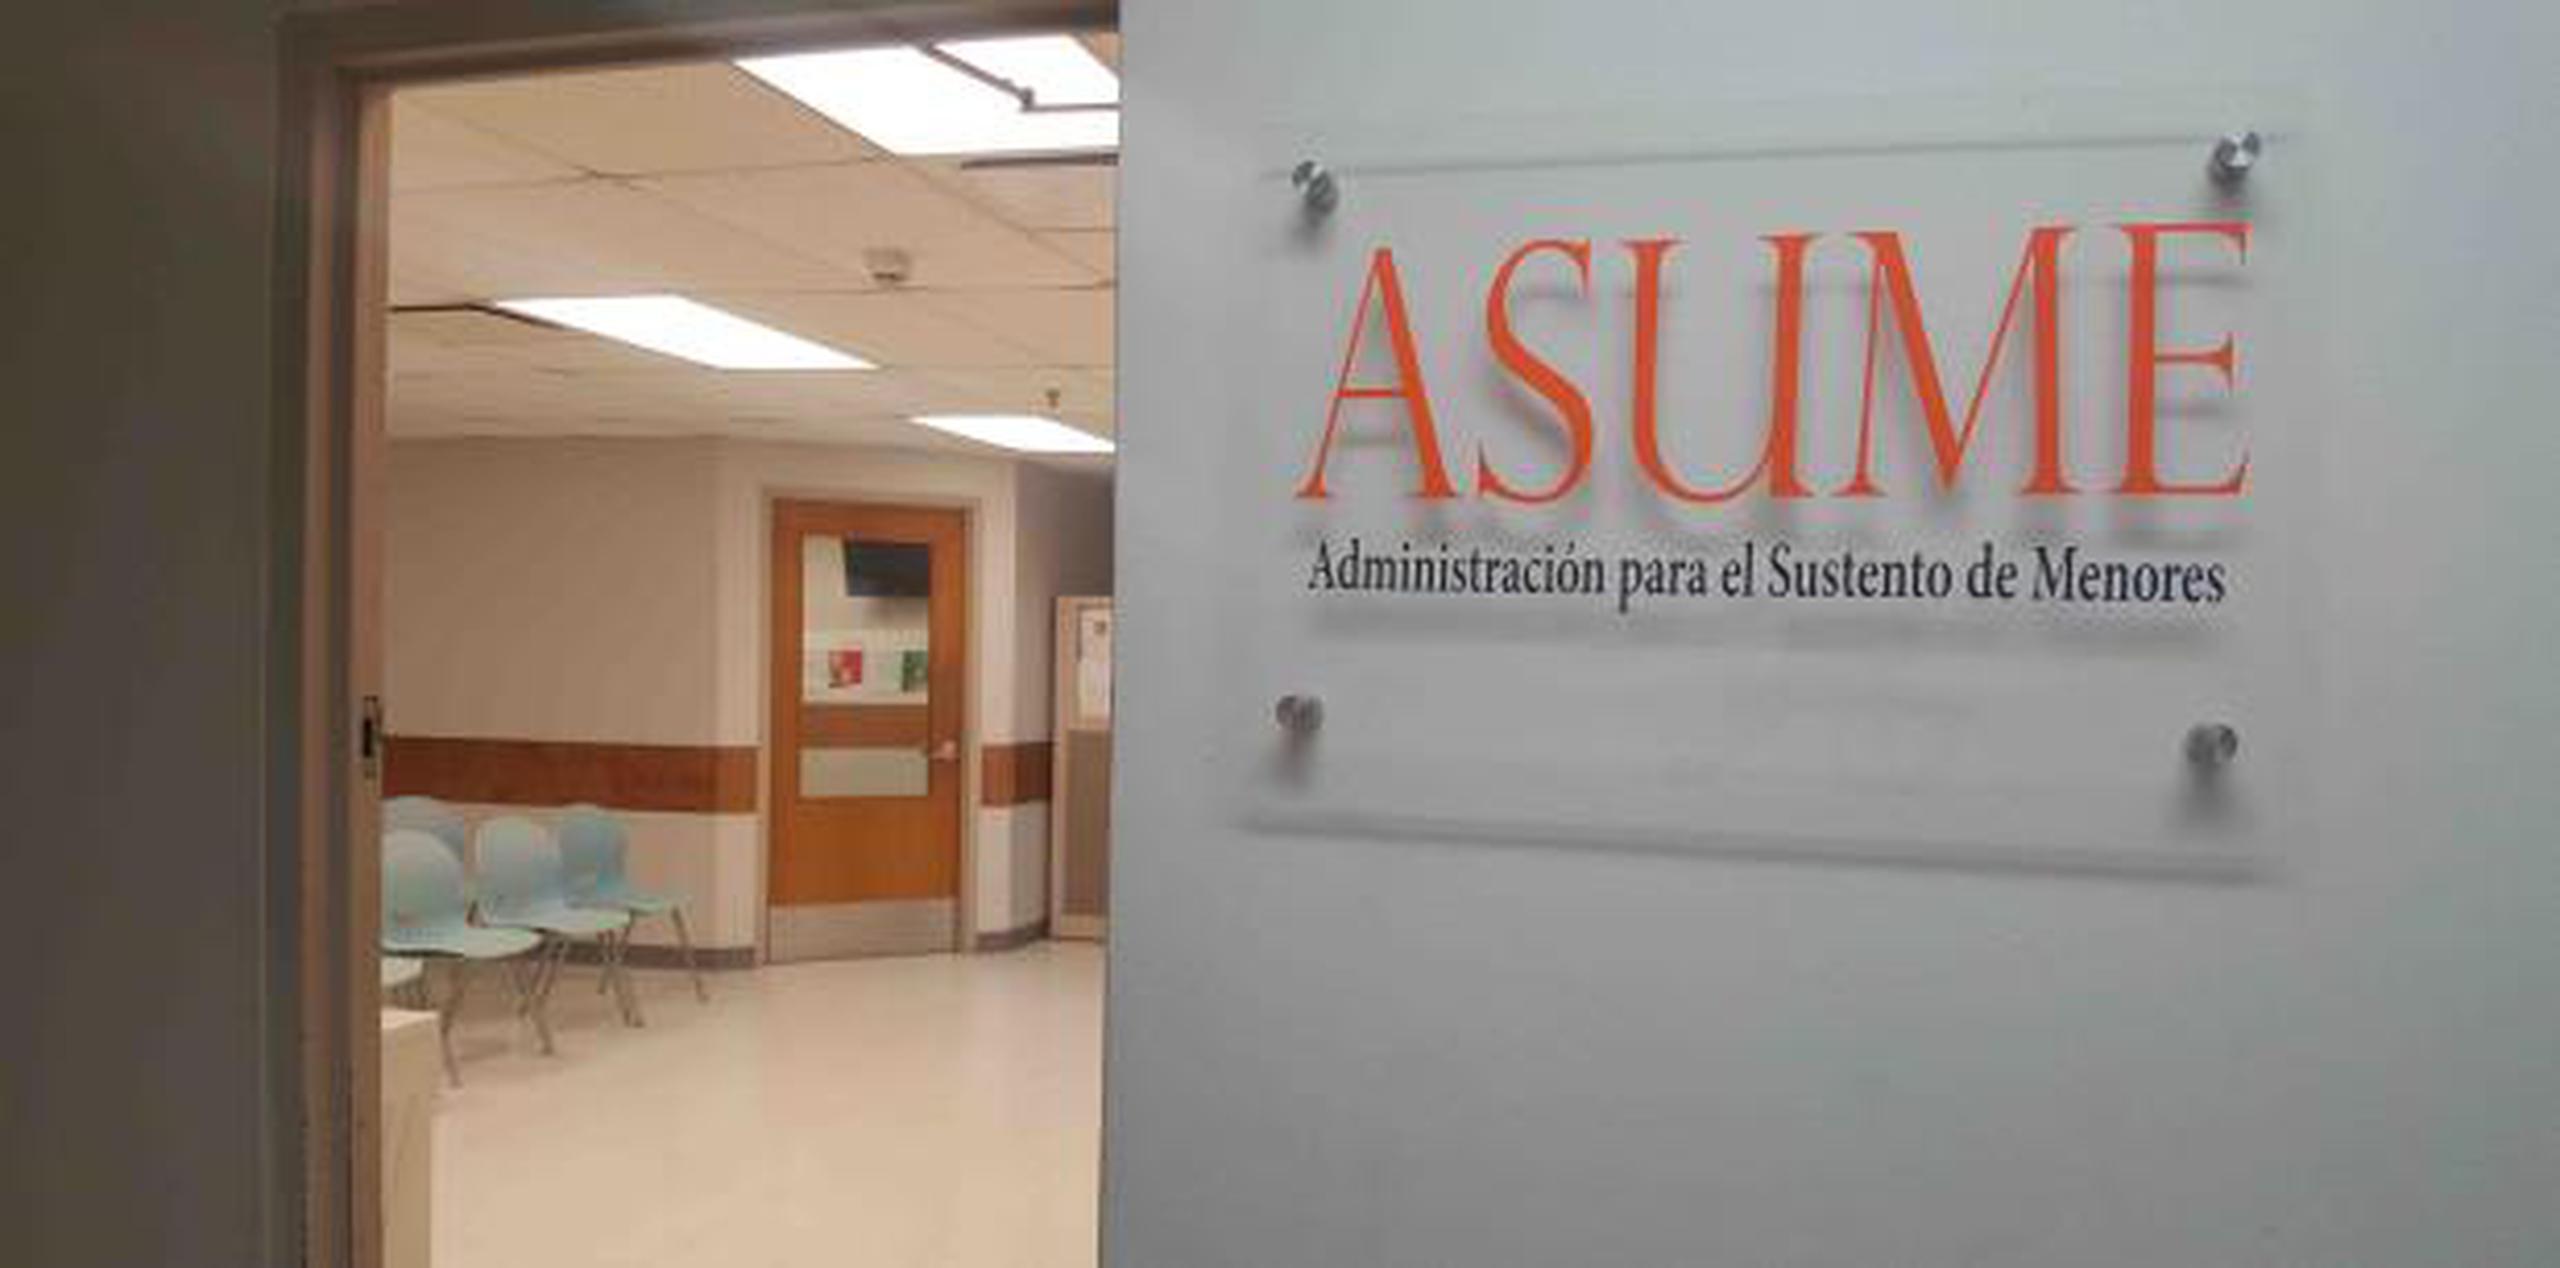 Varios progenitores perjudicados denuncian que Asume no hace los esfuerzos para contactar y localizar a los deudores. (frances.rosario@gfrmedia.com)